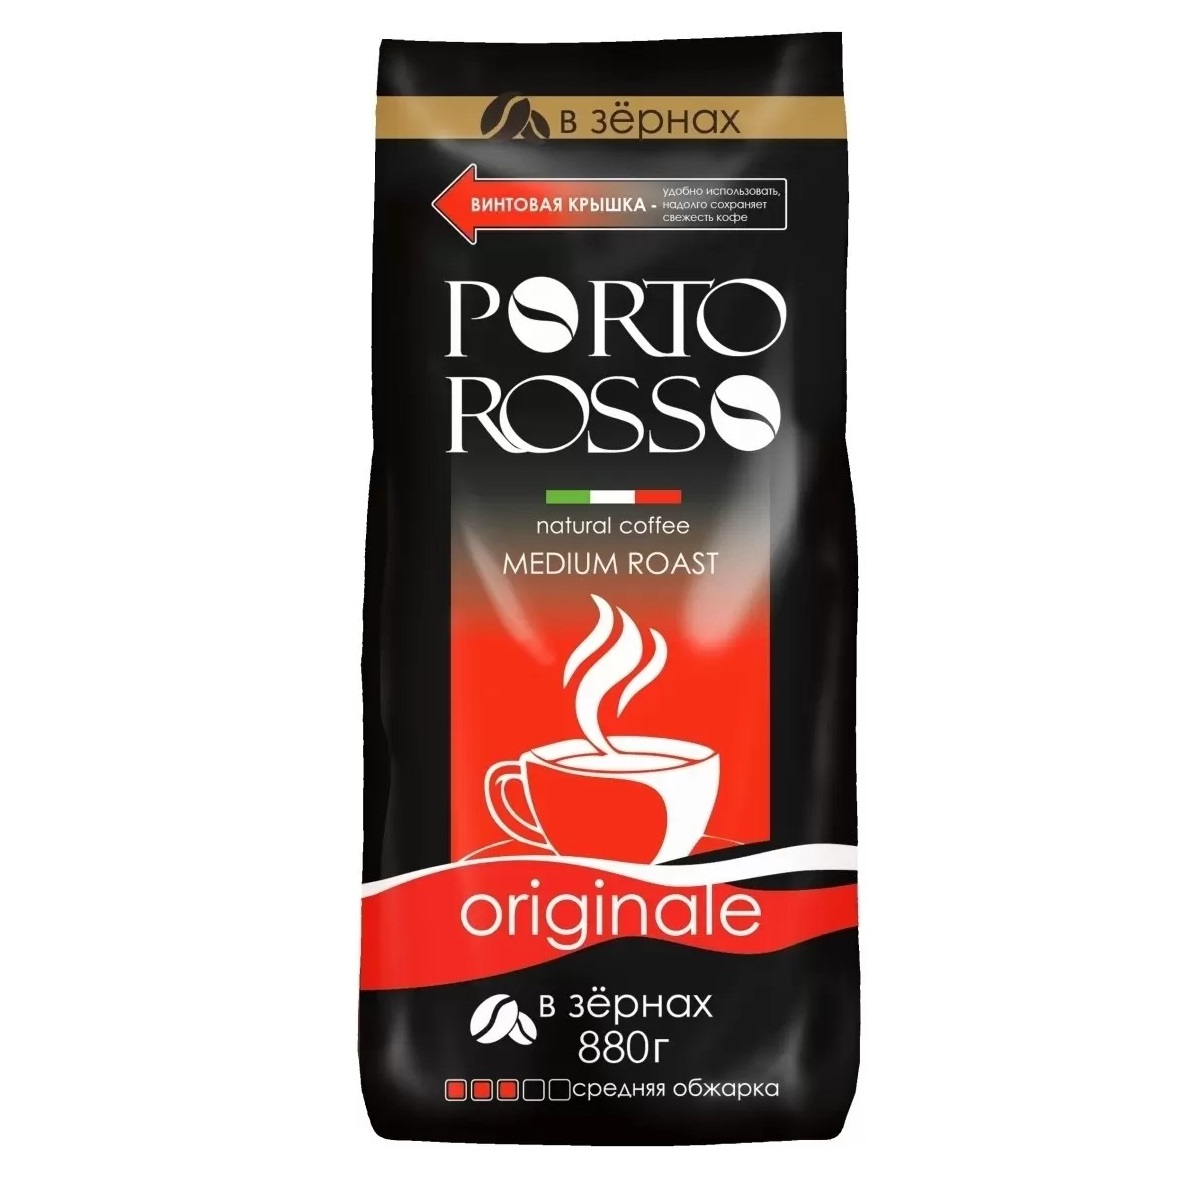 Кофе Porto Rosso в зернах Originale 880г кофе растворимый porto rosso originale 90 г